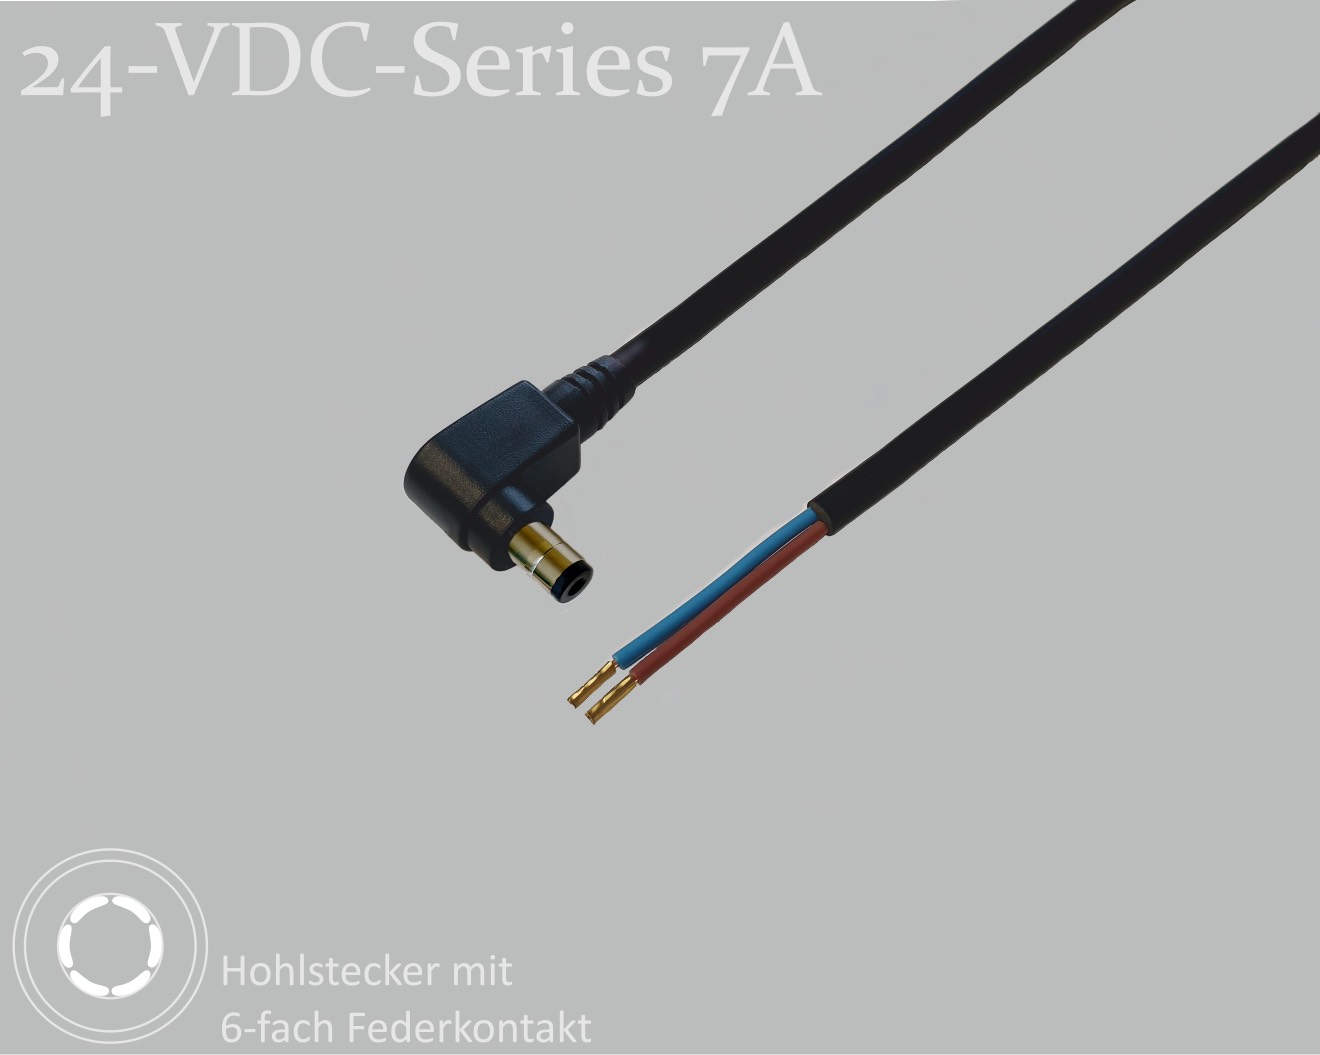 24-VDC-Series 7A, DC-Anschlusskabel, DC-Winkelstecker mit 6-Federkontakt 2,5x5,5x9,5mm, Rundkabel 2x0,50mm², schwarz, Aderendhülsen, 1,5m